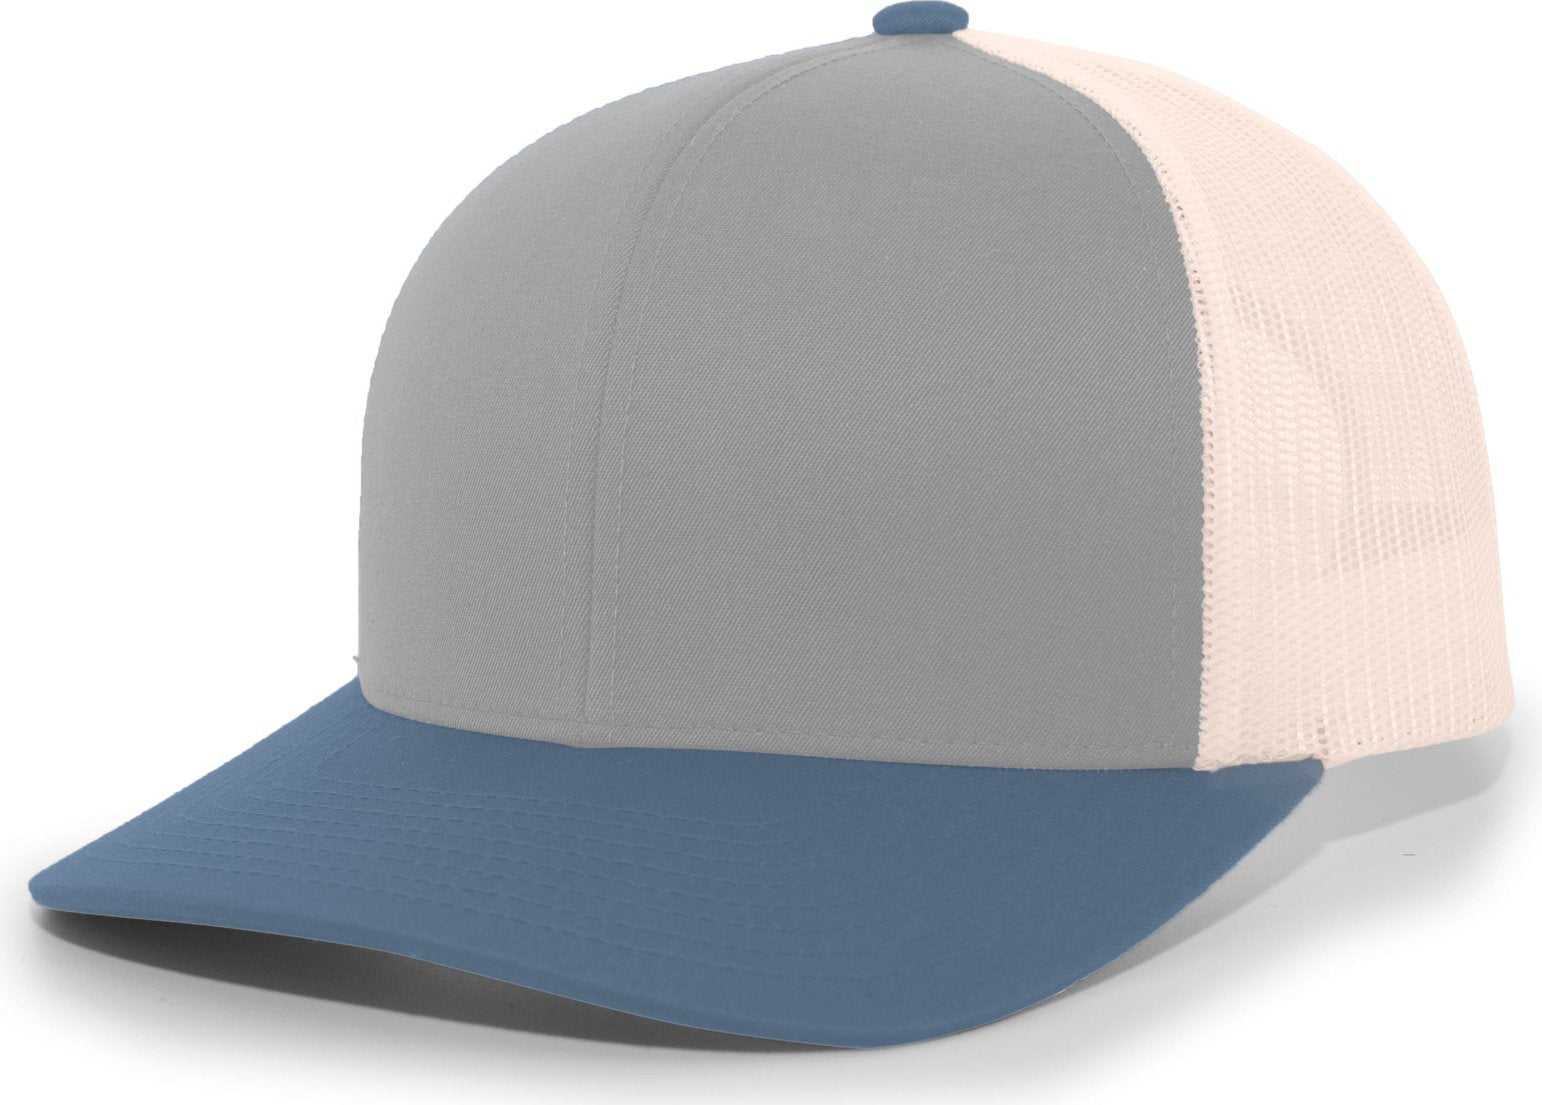 Pacific Headwear 104C Trucker Snapback Cap - Heather Grey Ocean Blue Beige - HIT a Double